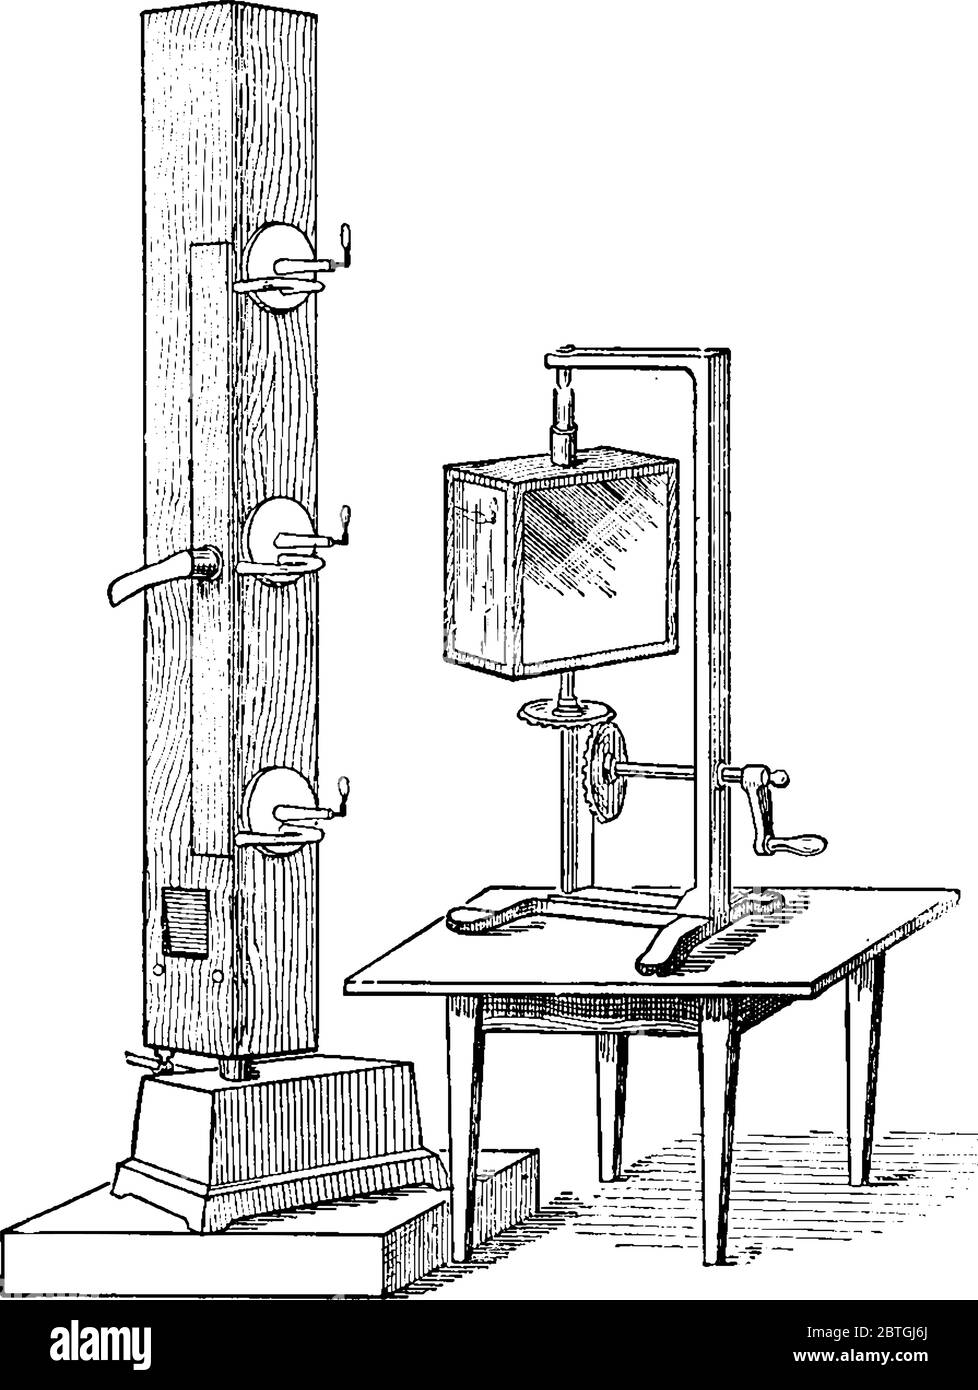 la figure montre un appareil en bois du xviiie siècle appelé appareil de flamme manométrique, utilisé pour l'examen des formes d'onde du son, dessin de ligne vintage ou Illustration de Vecteur